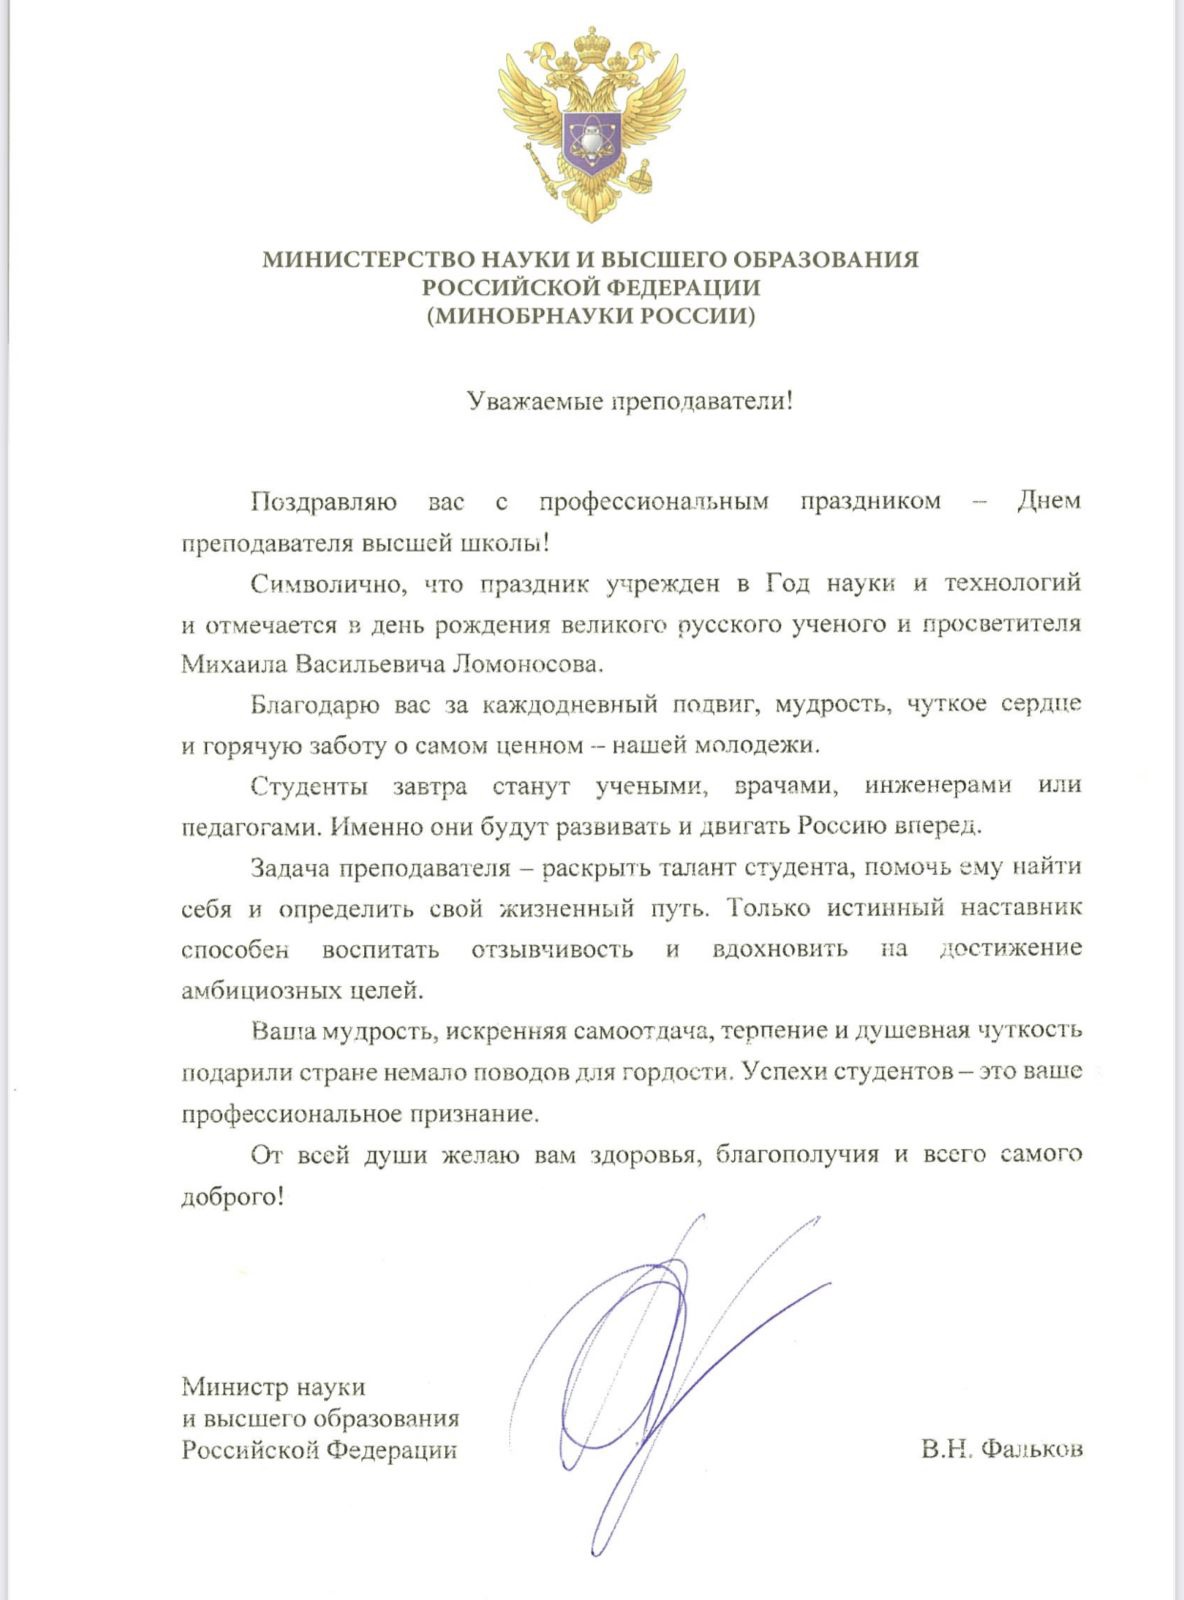 Поздравления Министра науки и высшего образования Российской Федерации